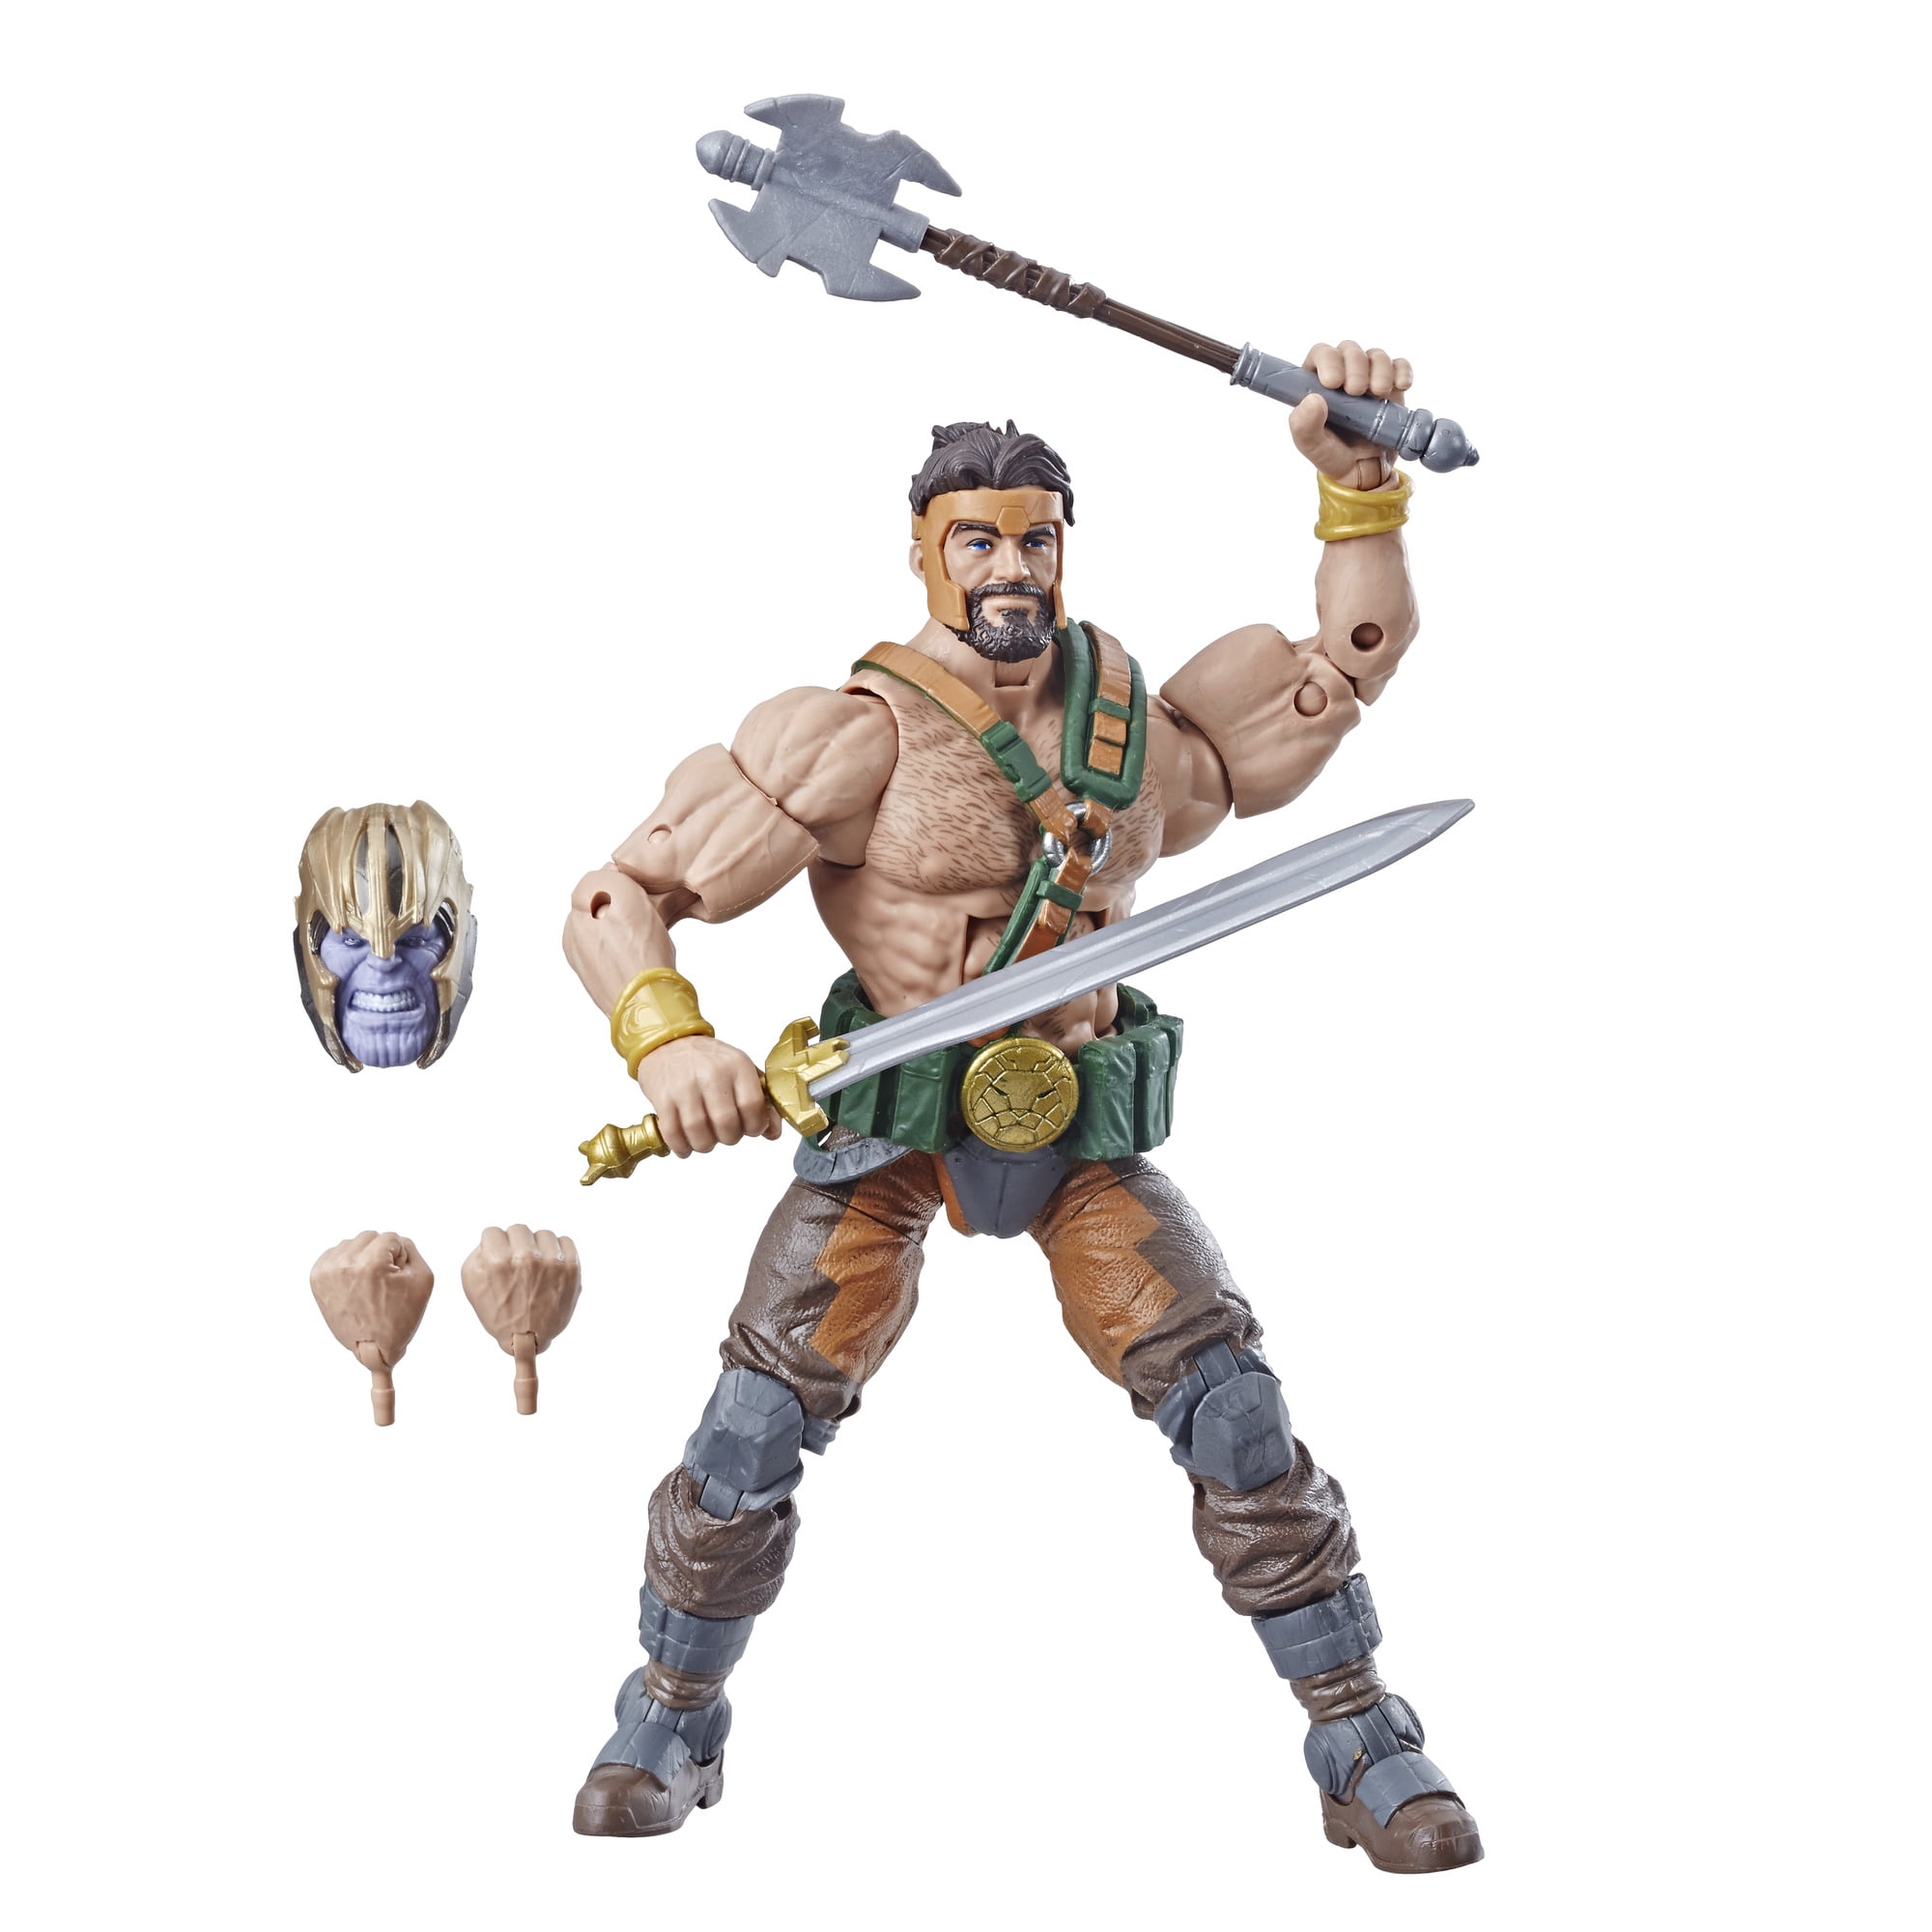 Rare  Hercules Legends Fisher Price Imaginext DC Super Friends figure 